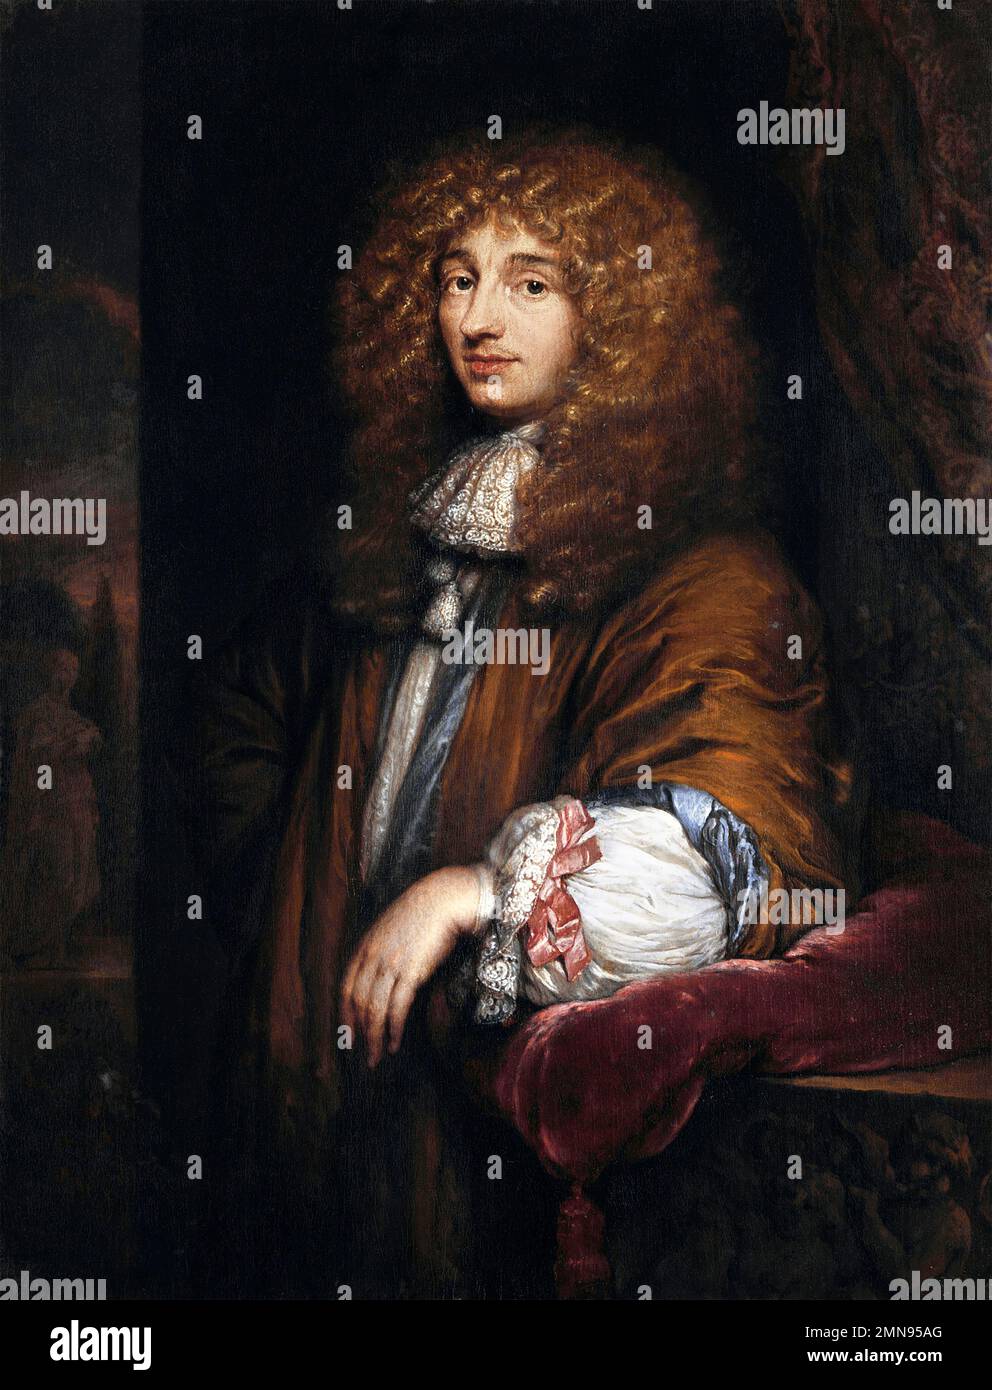 Christiaan Huygens. Porträt des niederländischen Mathematikers, Physikers und Astronomen Christiaan Huygens (1629-1695), Gemälde von Caspar Netscher, 1671 Stockfoto